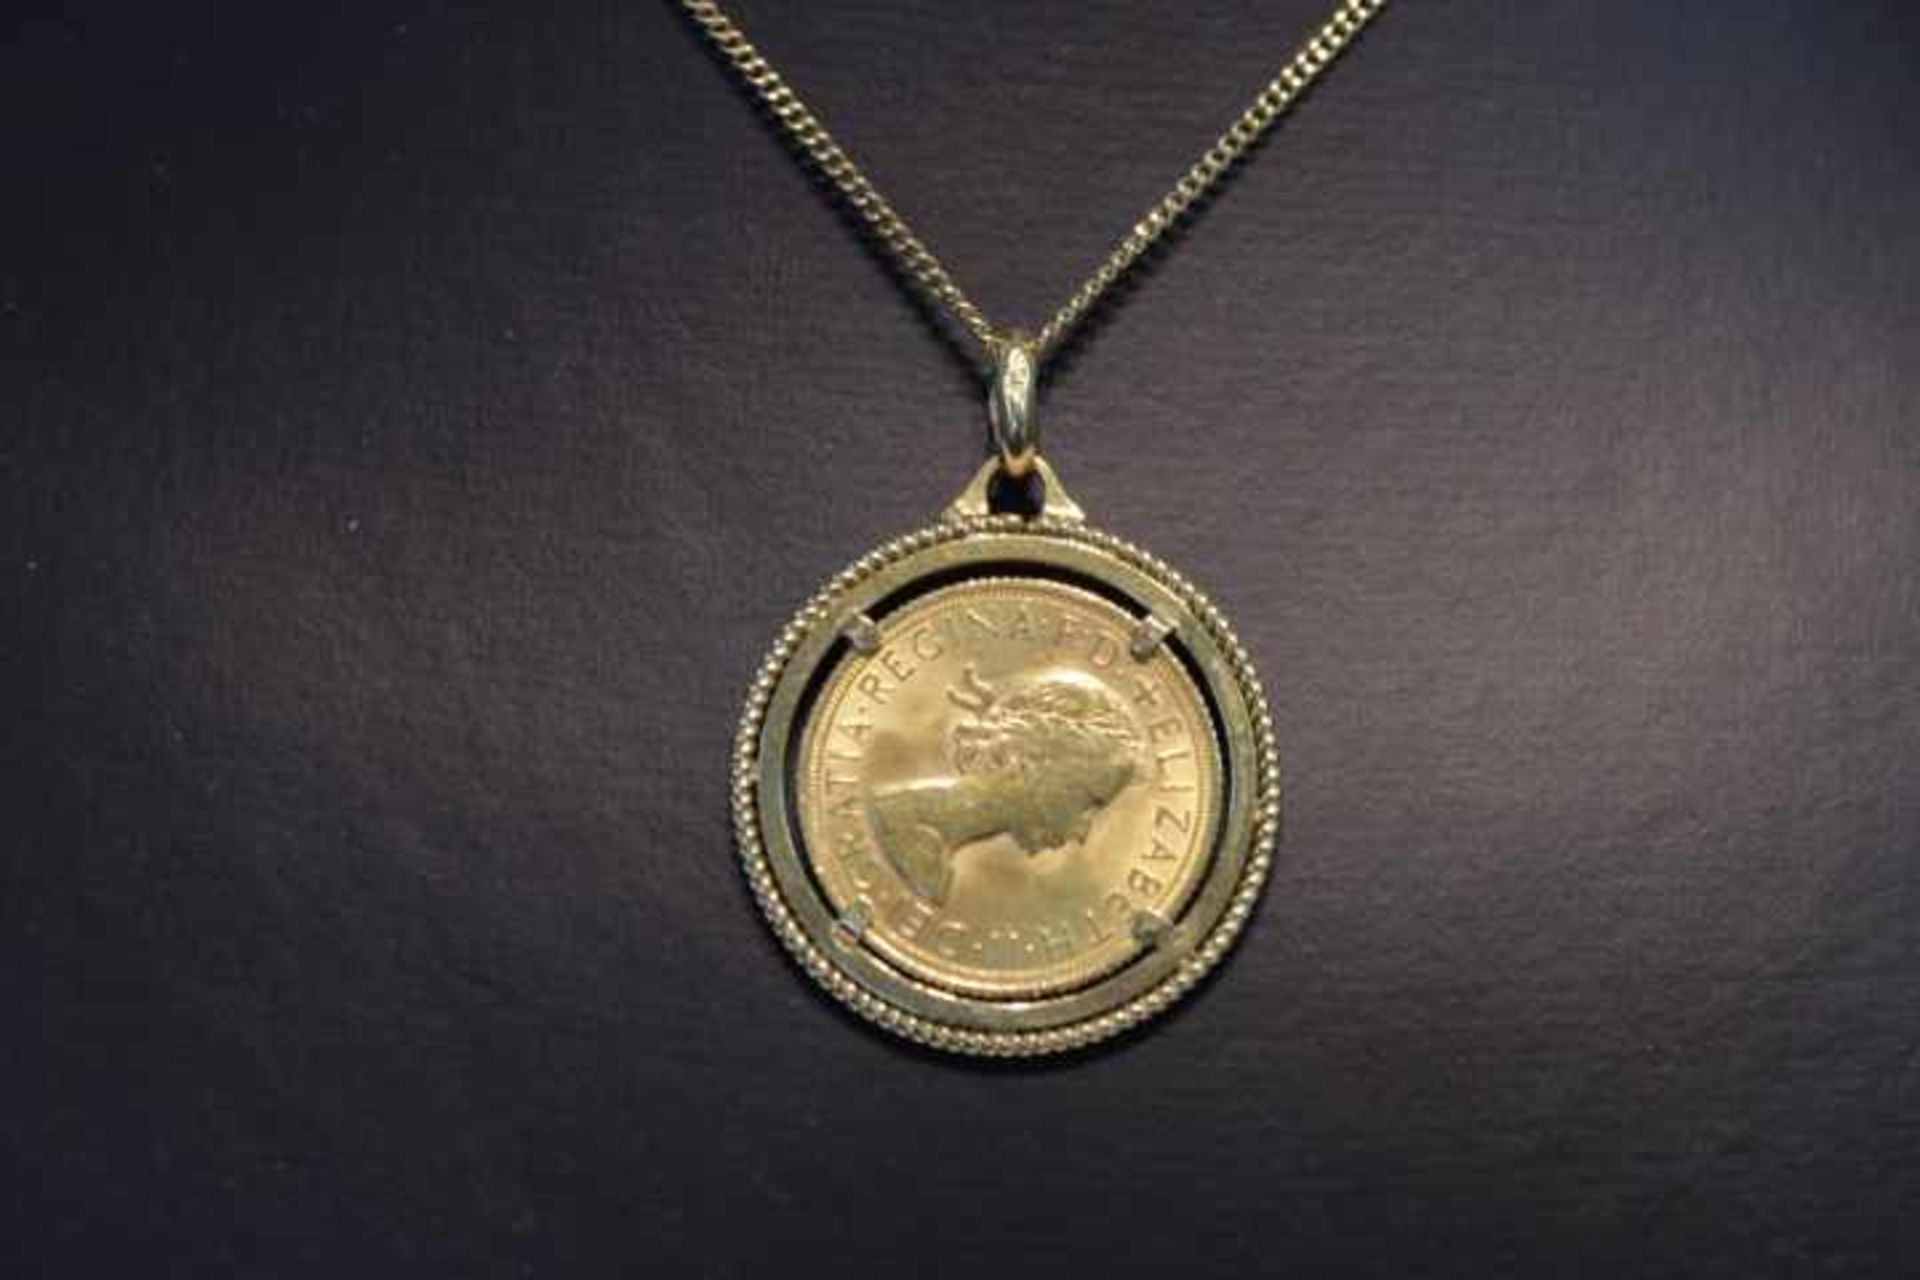 750/18kt Halskettemit gefasster Münze Sovergein 1958 Großbritanien Königin Elisabeth IIGewicht:Kette